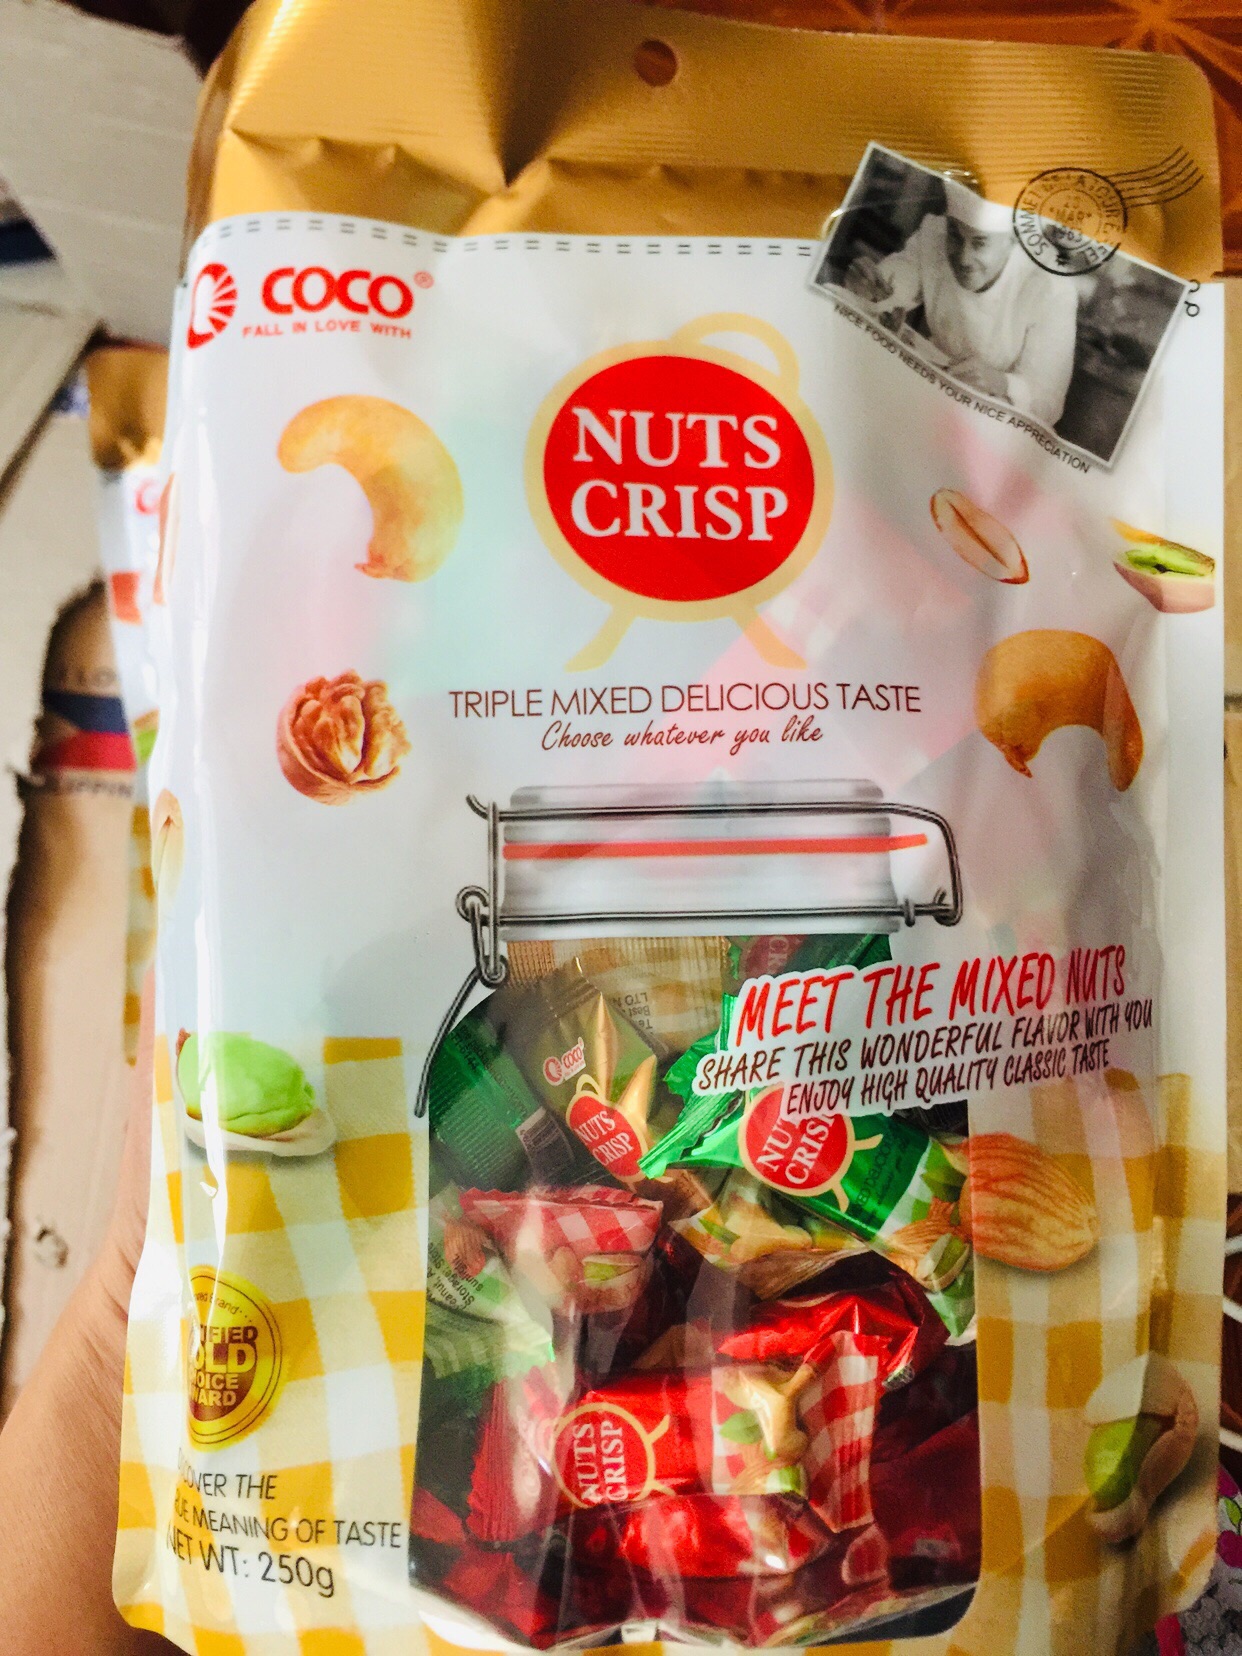 Coco nuts crisp